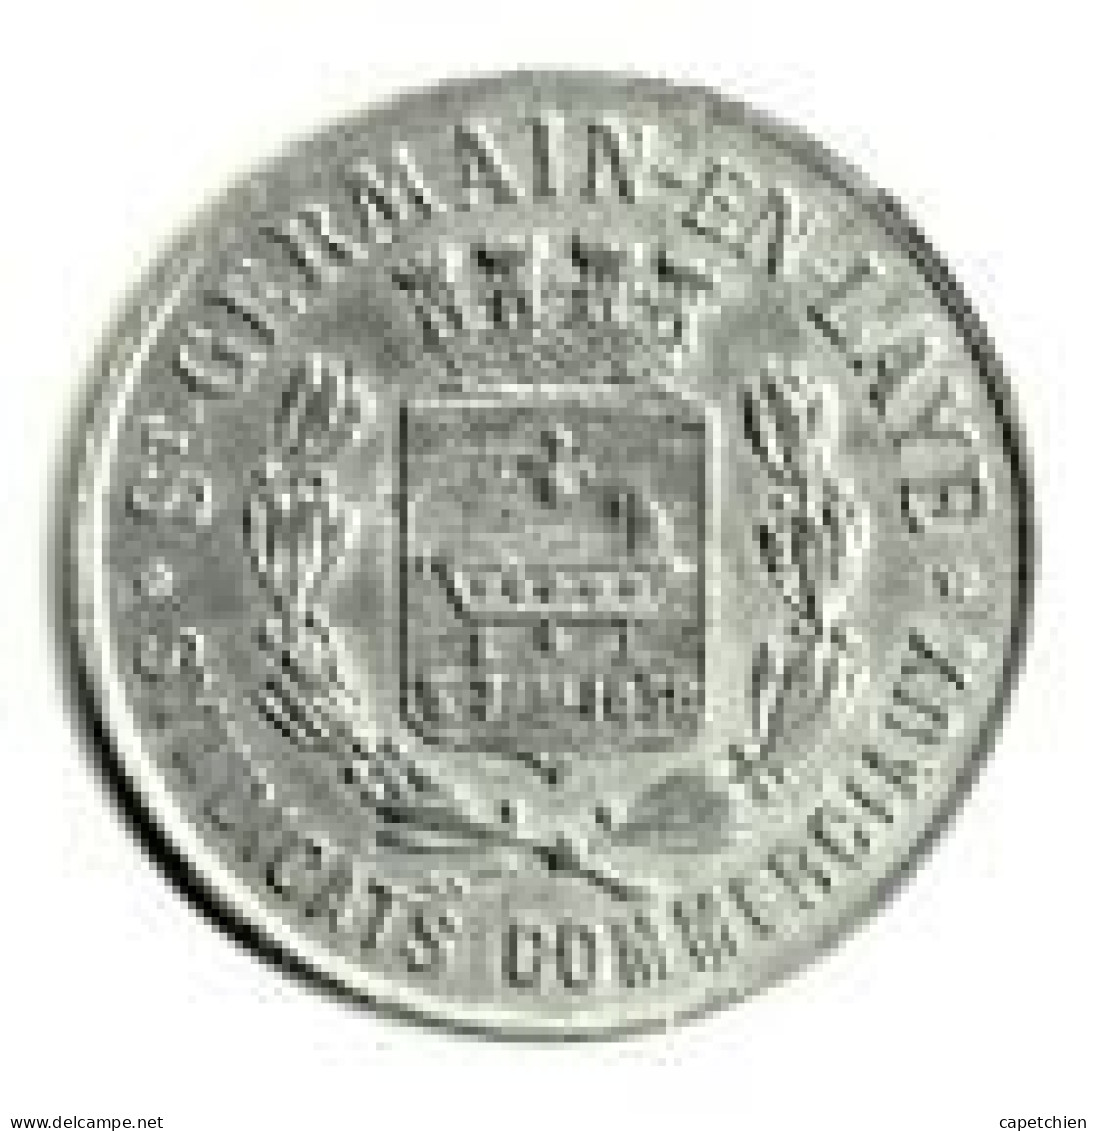 FRANCE/ NECESSITE / SAINT GERMAIN EN LAYE / SYNDICATS COMMERCIAUX / UNION ....  / 25 CENT / 1918 / ALU / 1.49 G / 26 Mm - Monétaires / De Nécessité